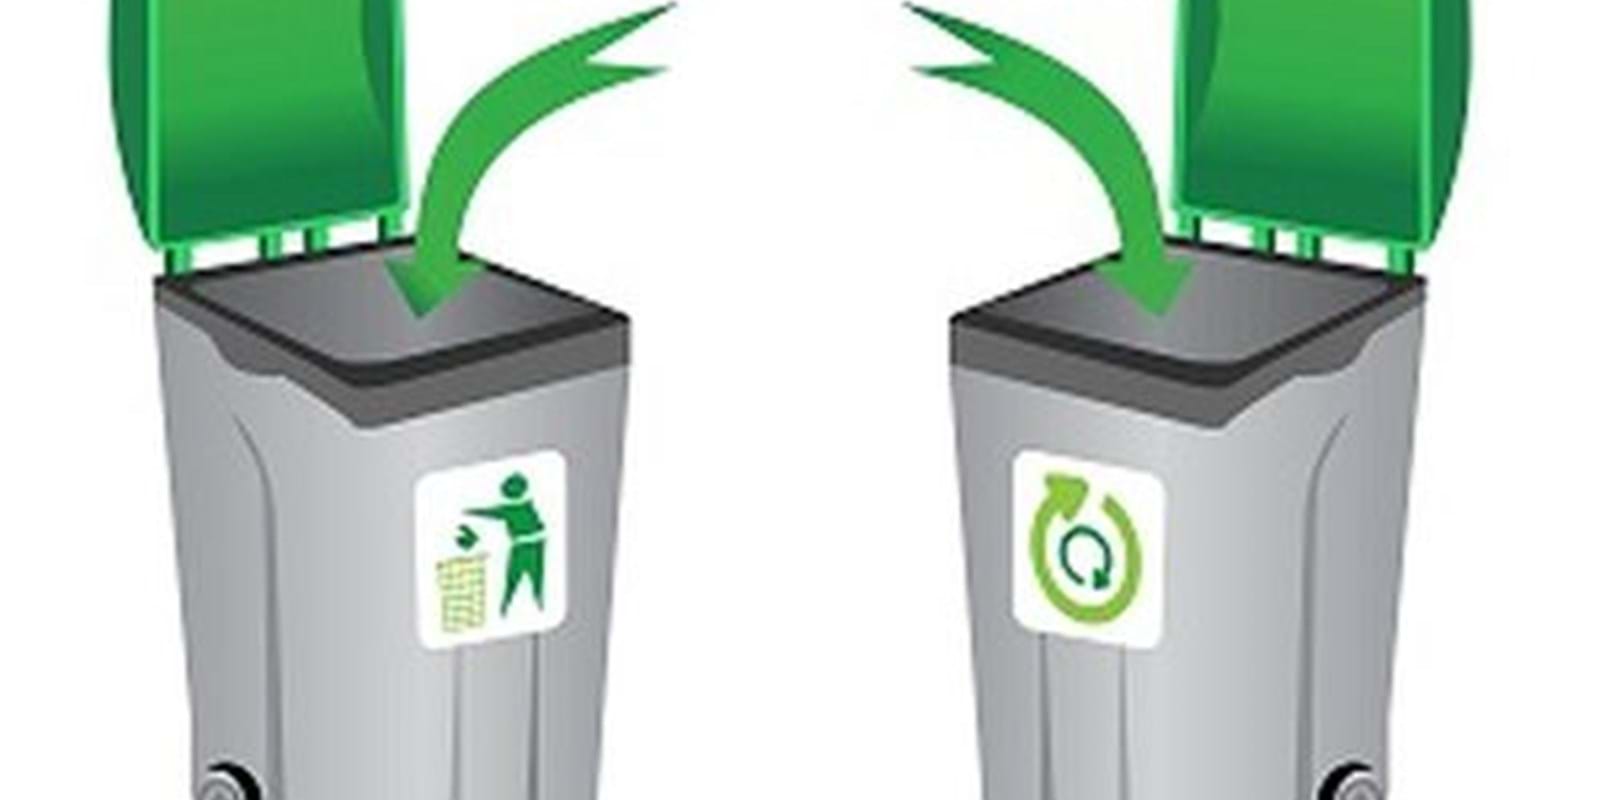 Le compostage, une habitude à intégrer?